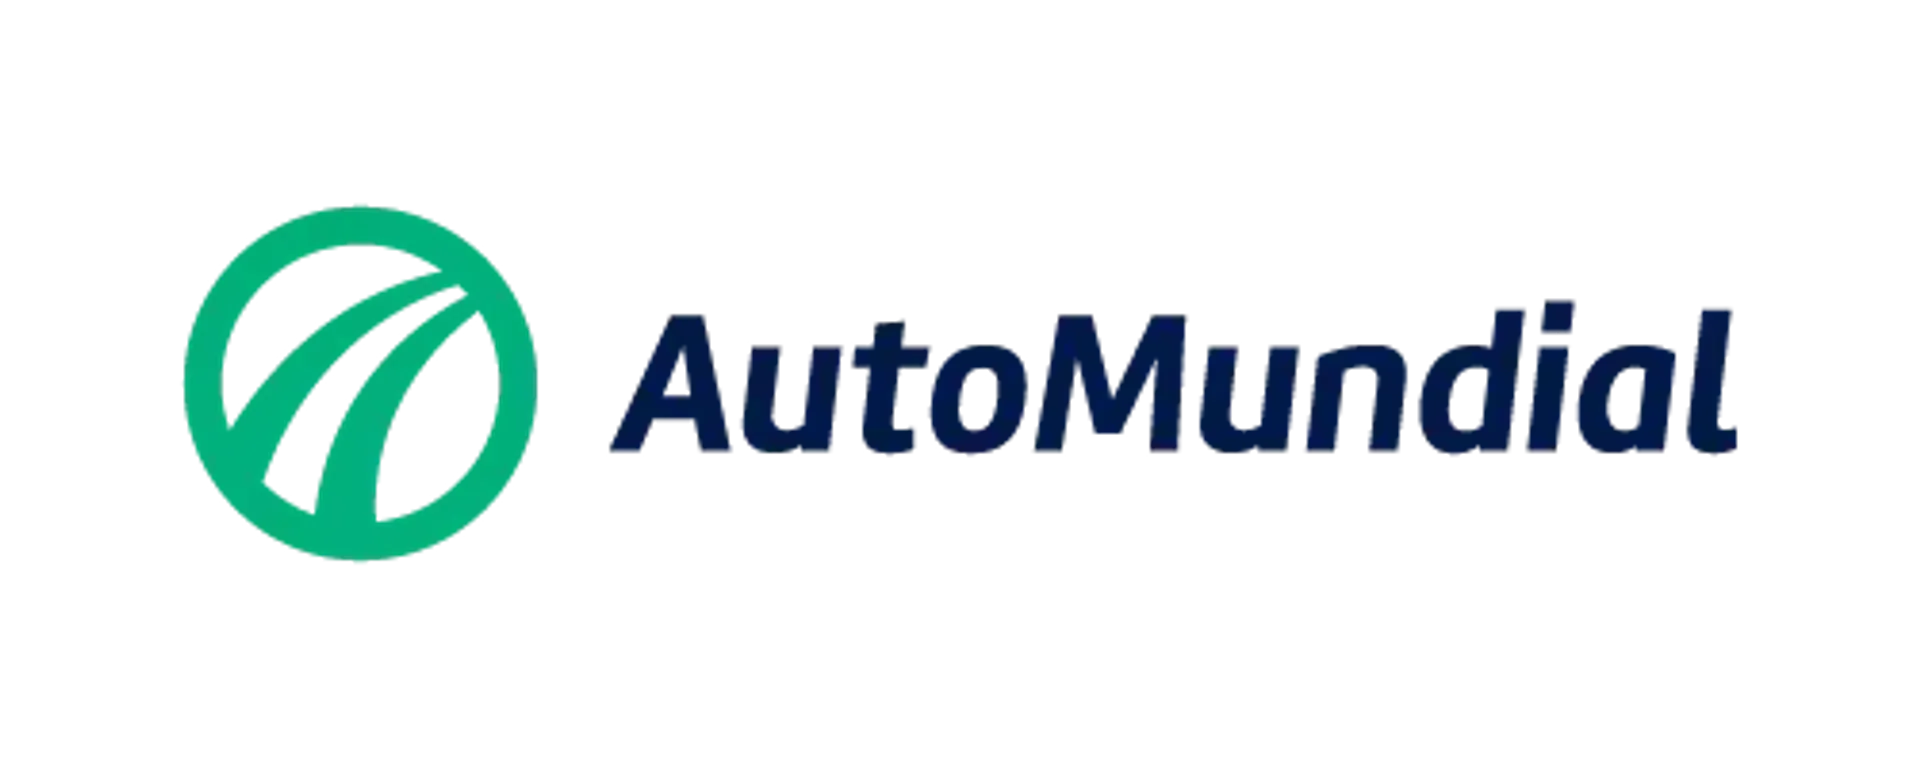 AUTOMUNDIAL logo de catálogo